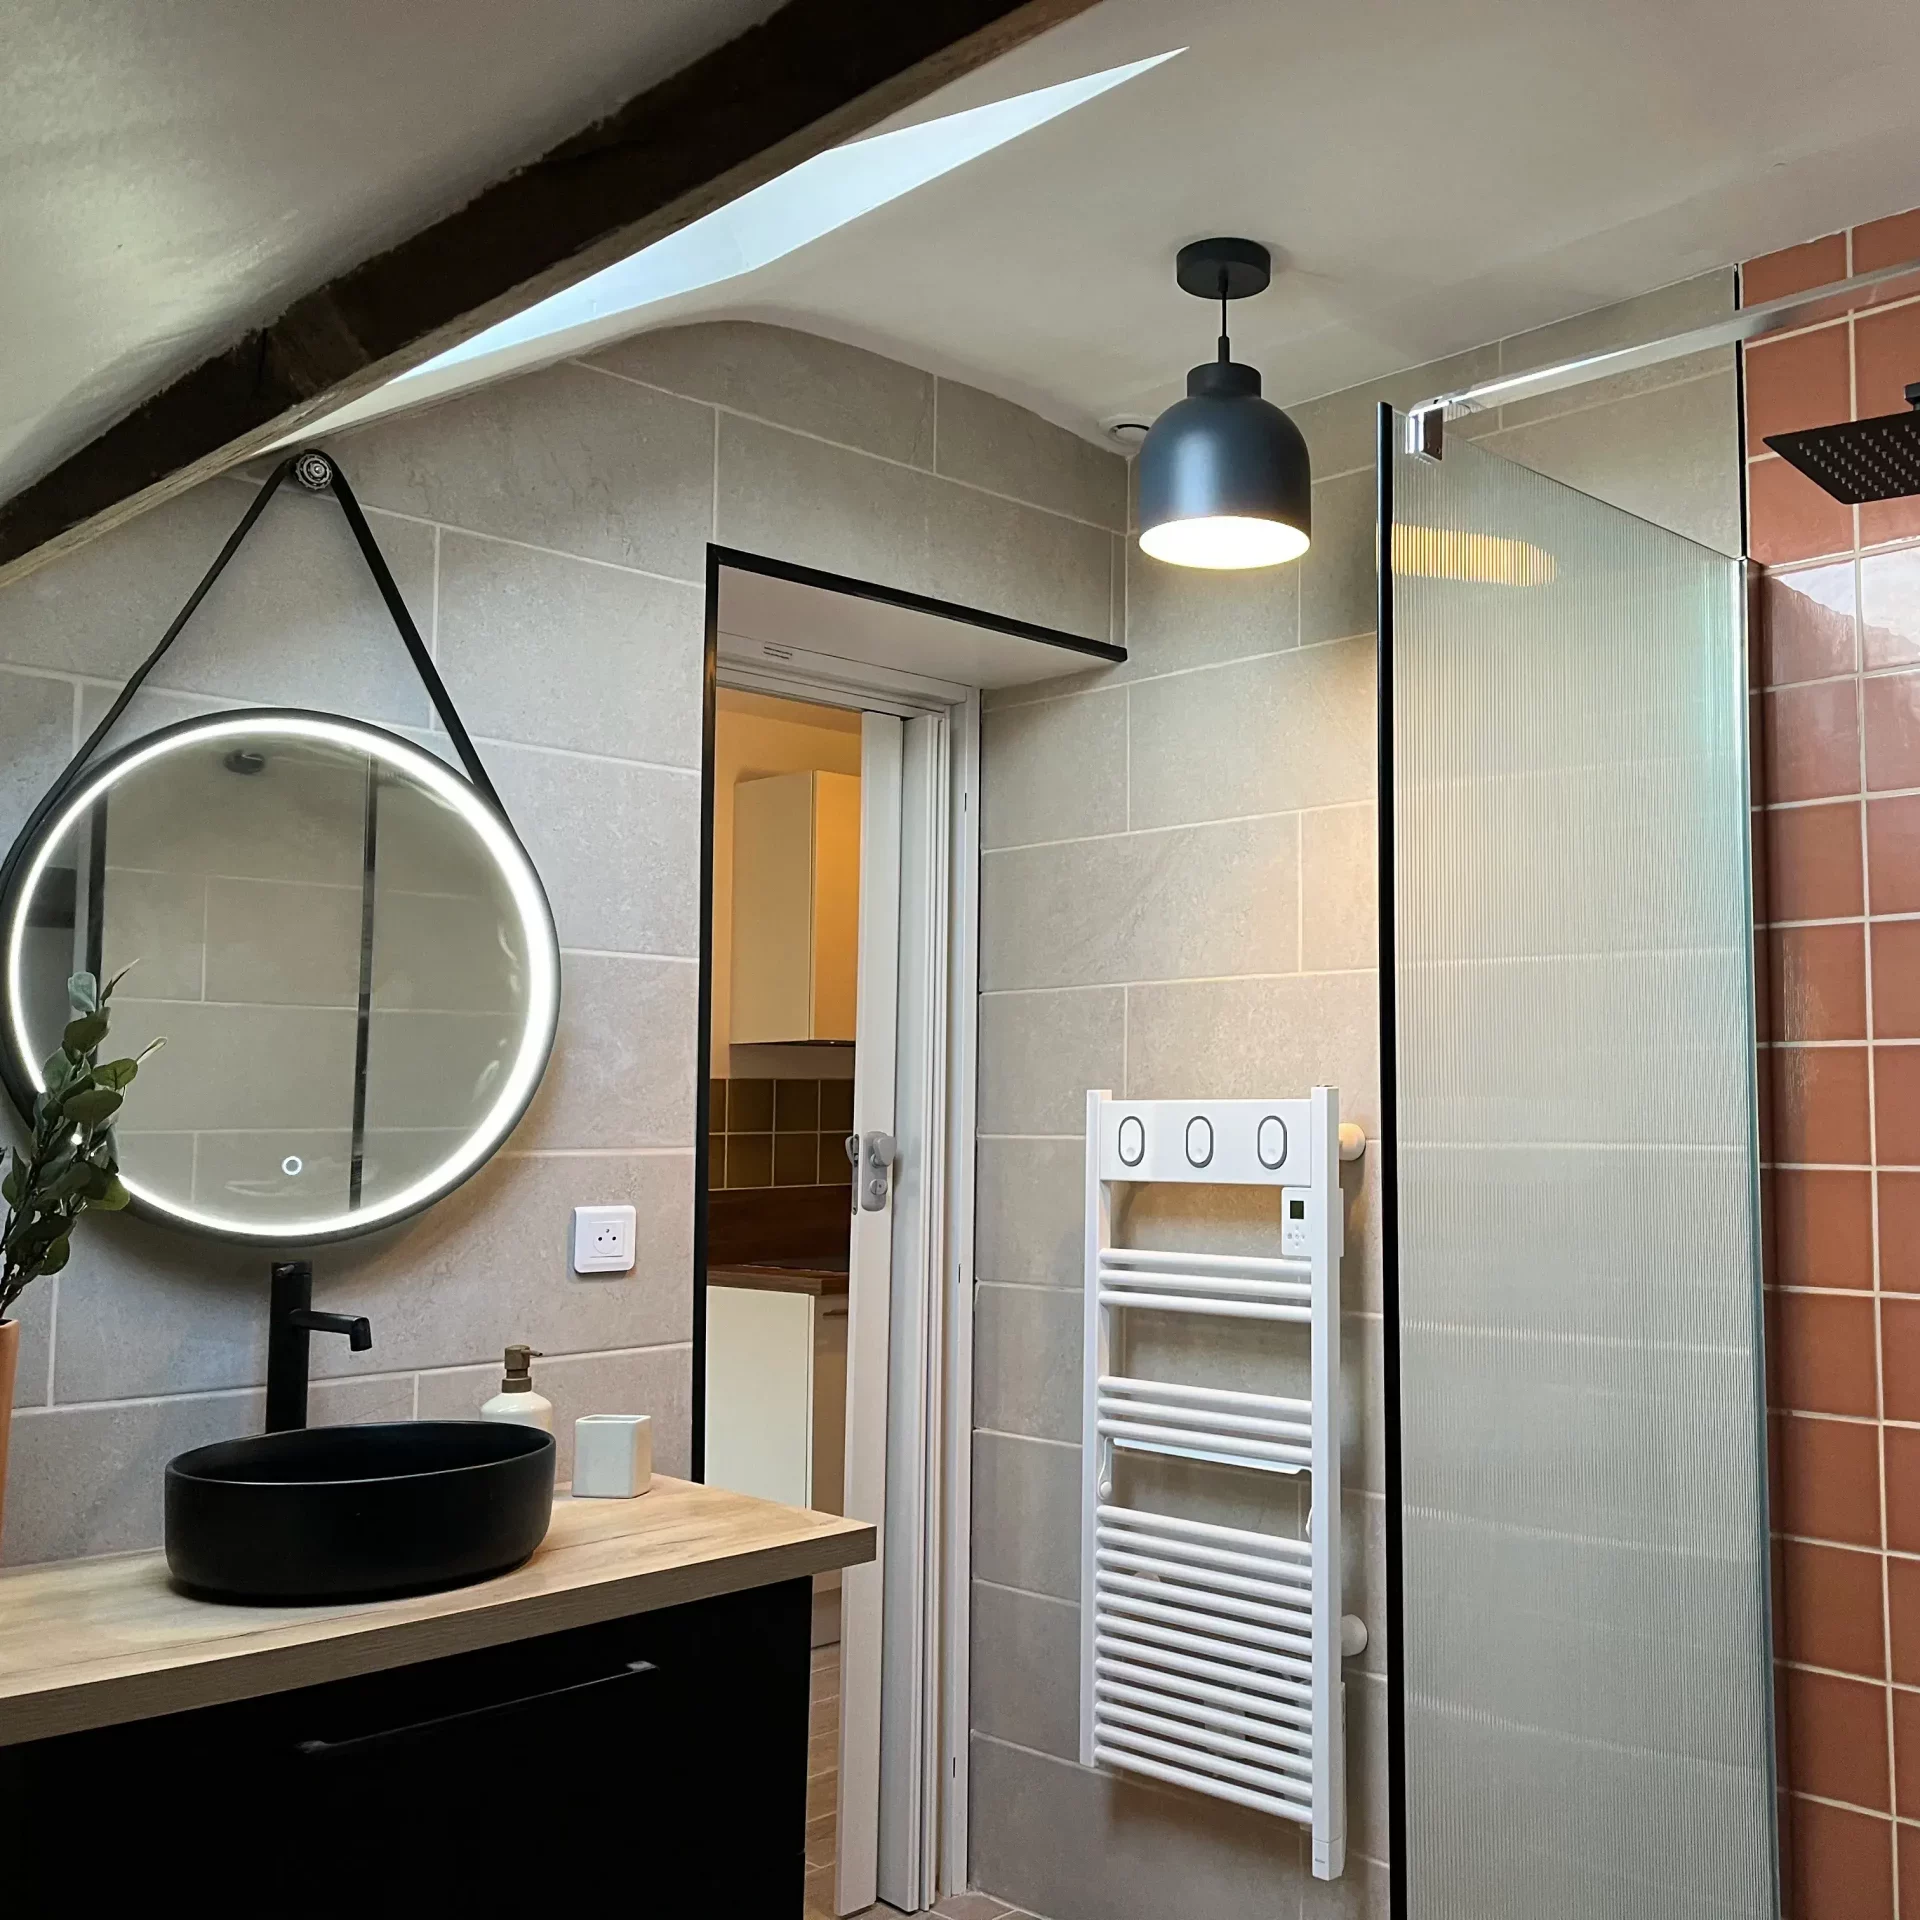 Salle de bain moderne, aux couleurs noirs et bois